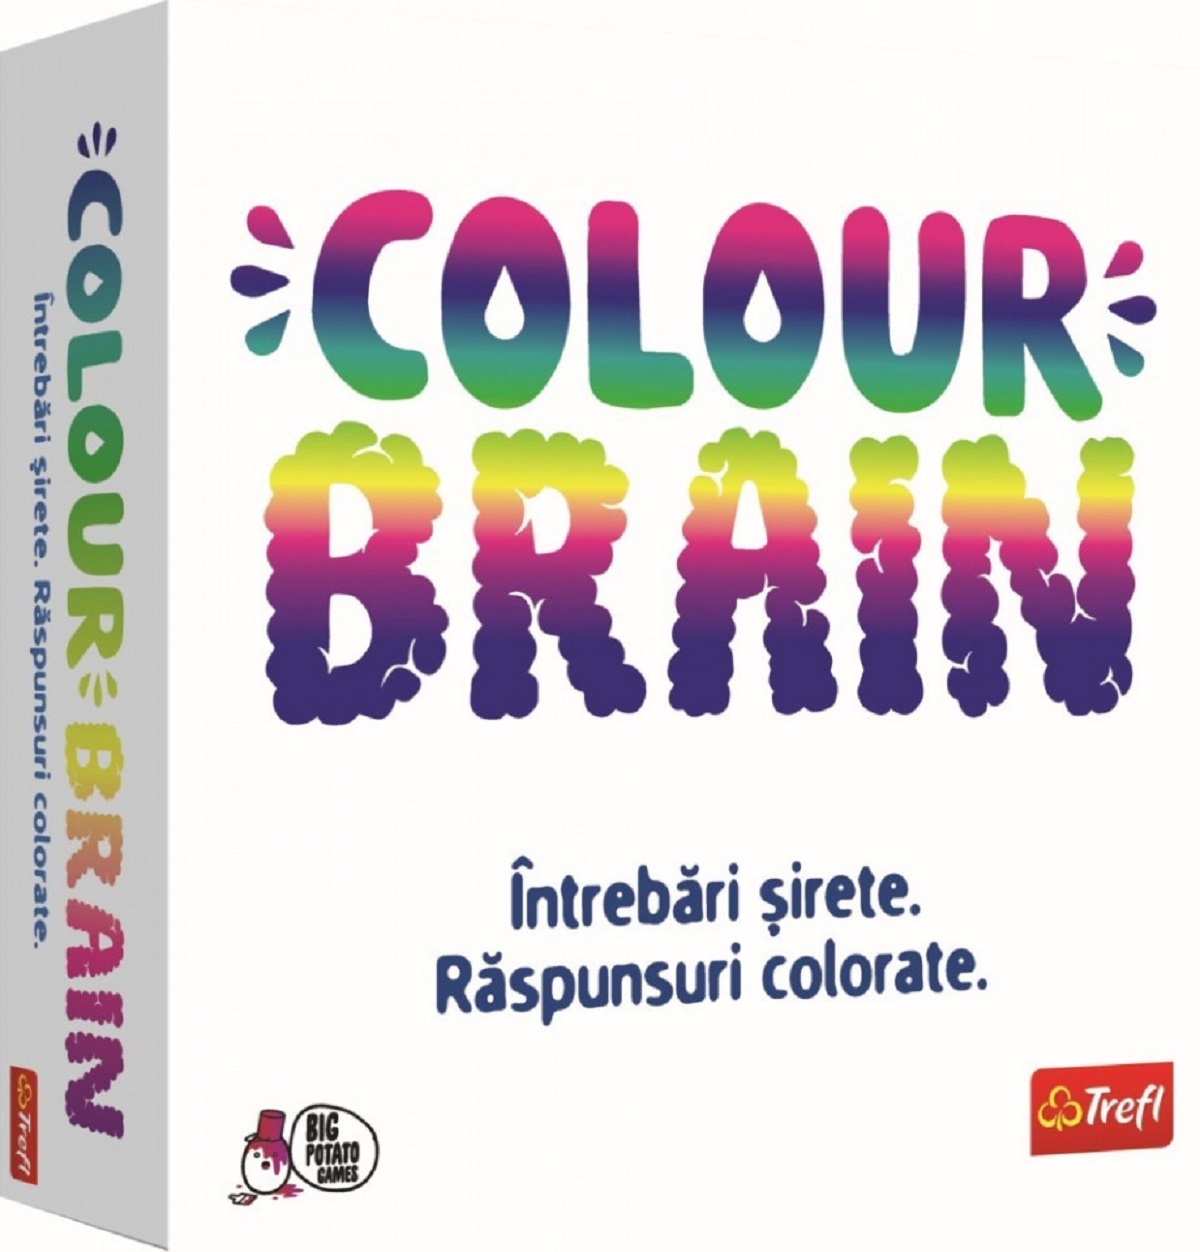 Jocul Colour Brain. Puneti creierul la lucru